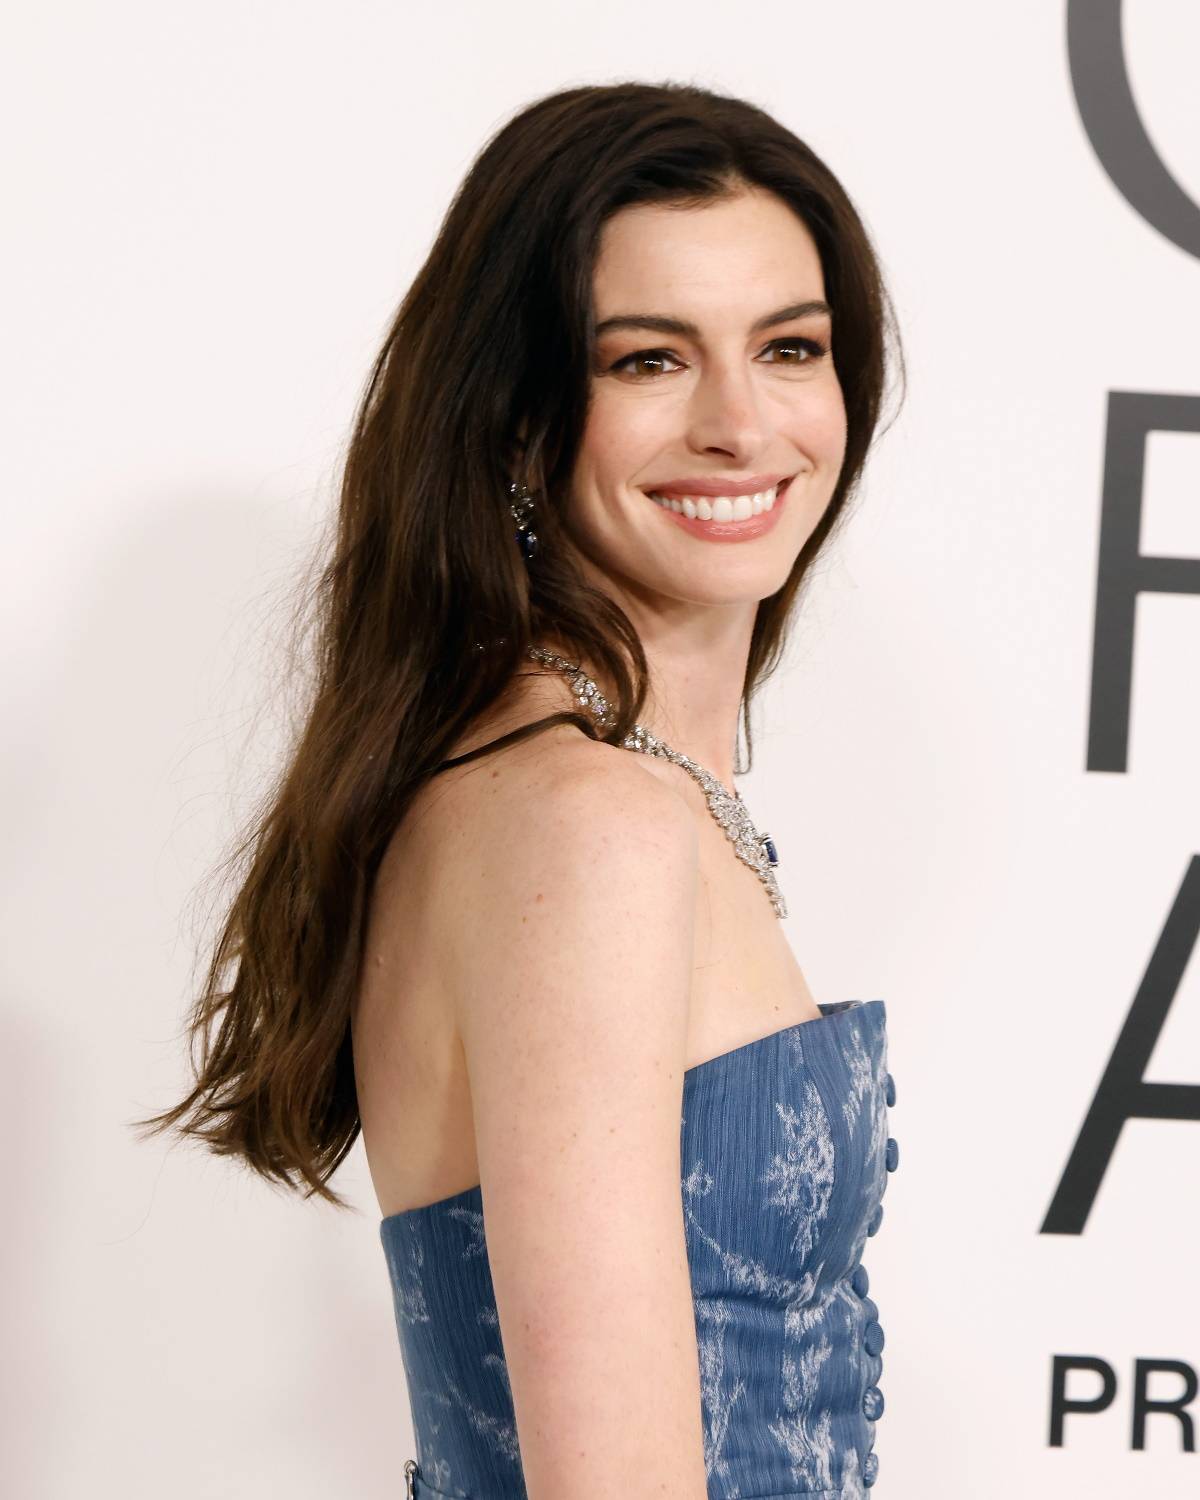  Ikona stylu Anne Hathaway w jeansowej kreacji na CFDA Awards. Anne Hathaway na gali CFDA pojawiła się w kreacji od Ralpha Laurena i postawiła na chyba najbardziej utożsamianą z USA tkaninę – sprany jeans.